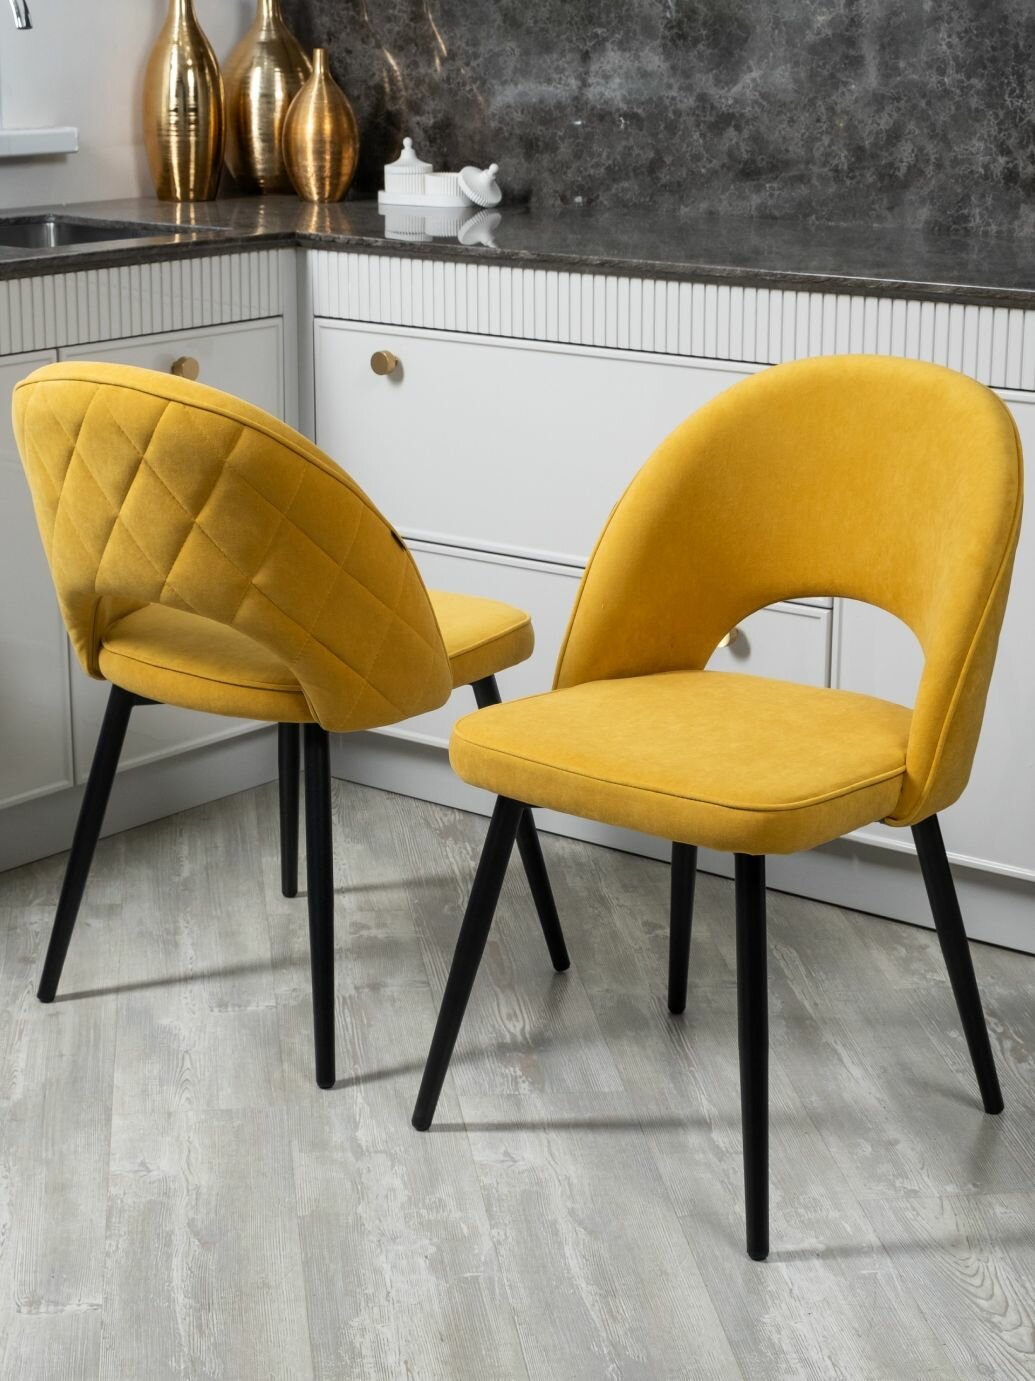 Комплект стульев "Клэр-2" для кухни желтый, стул 2 шт.